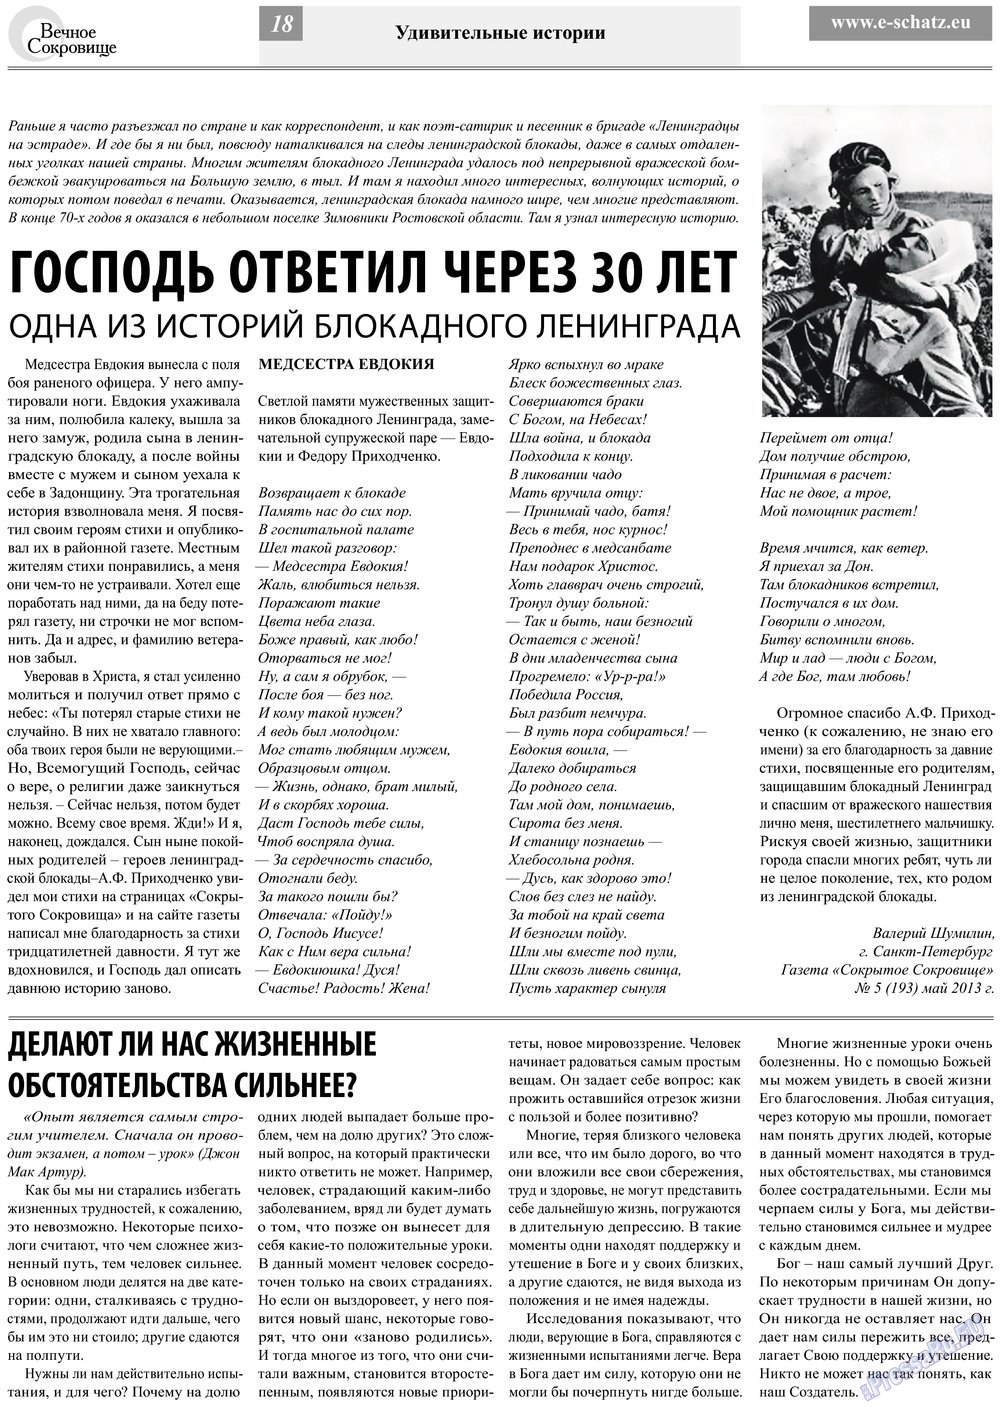 Вечное сокровище (газета). 2013 год, номер 3, стр. 18